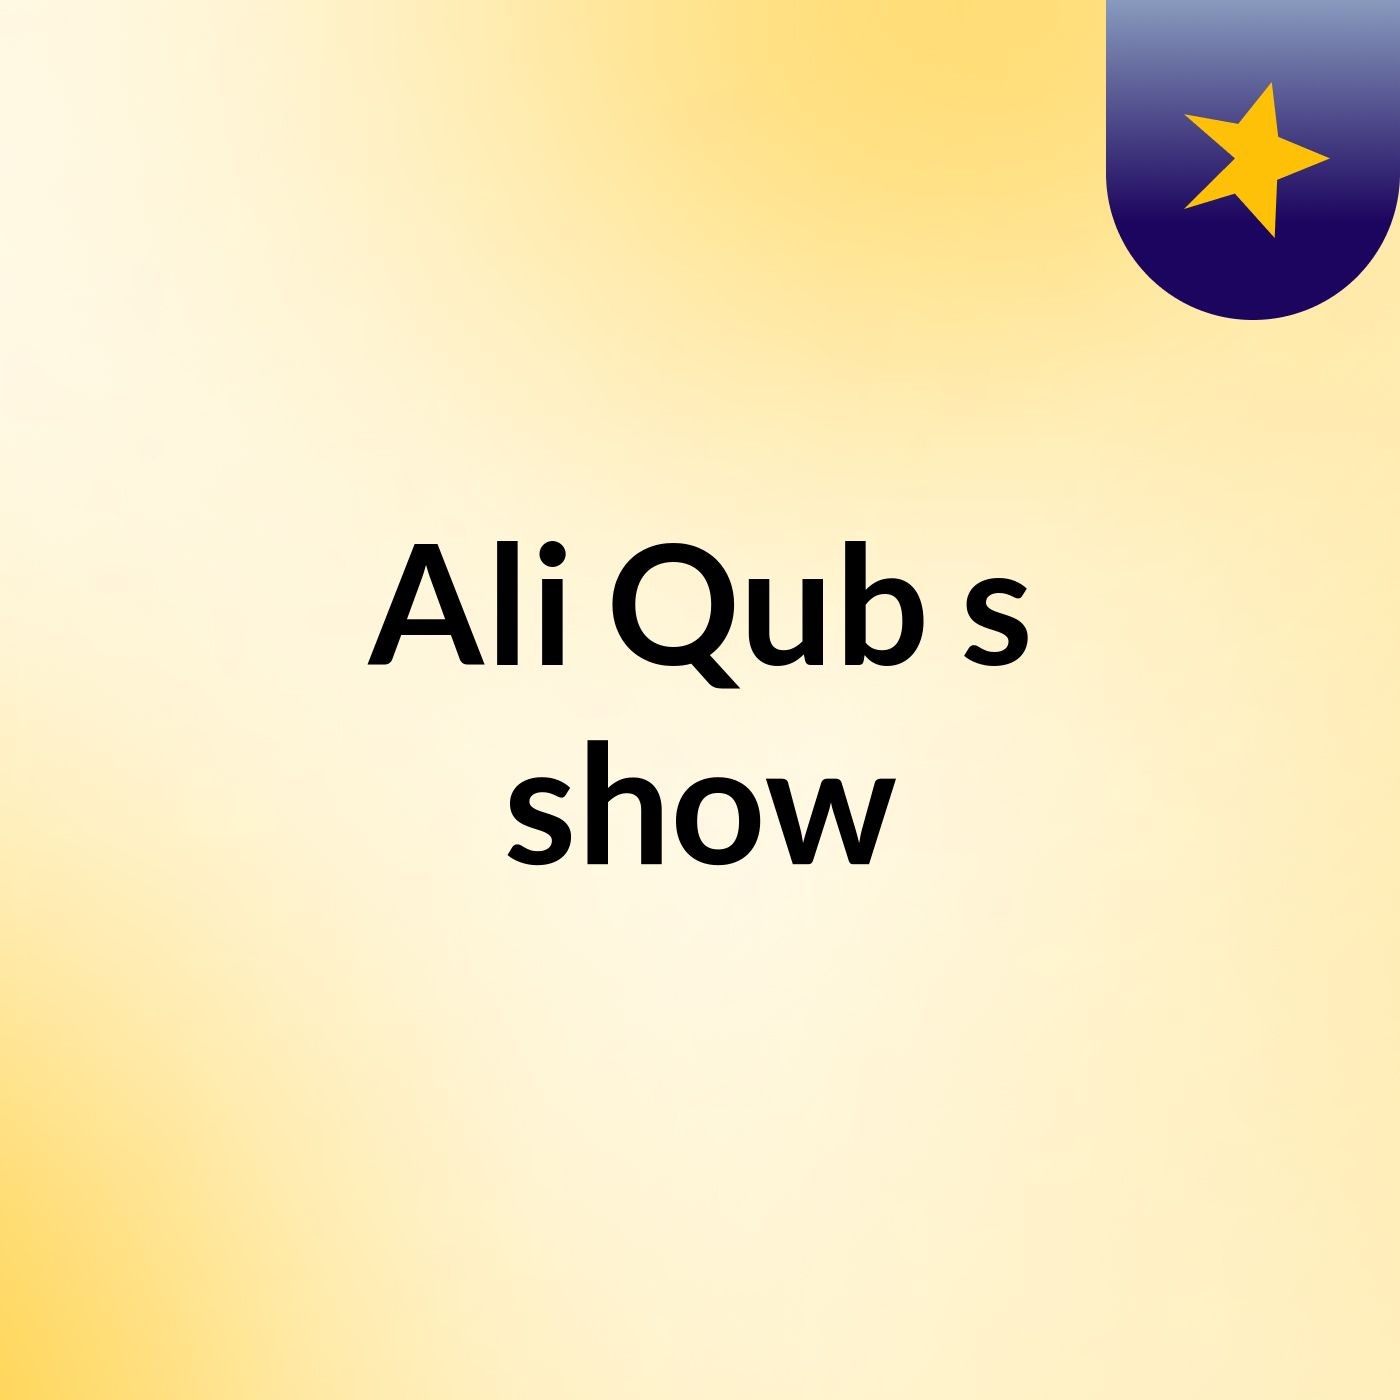 Ali Qub's show